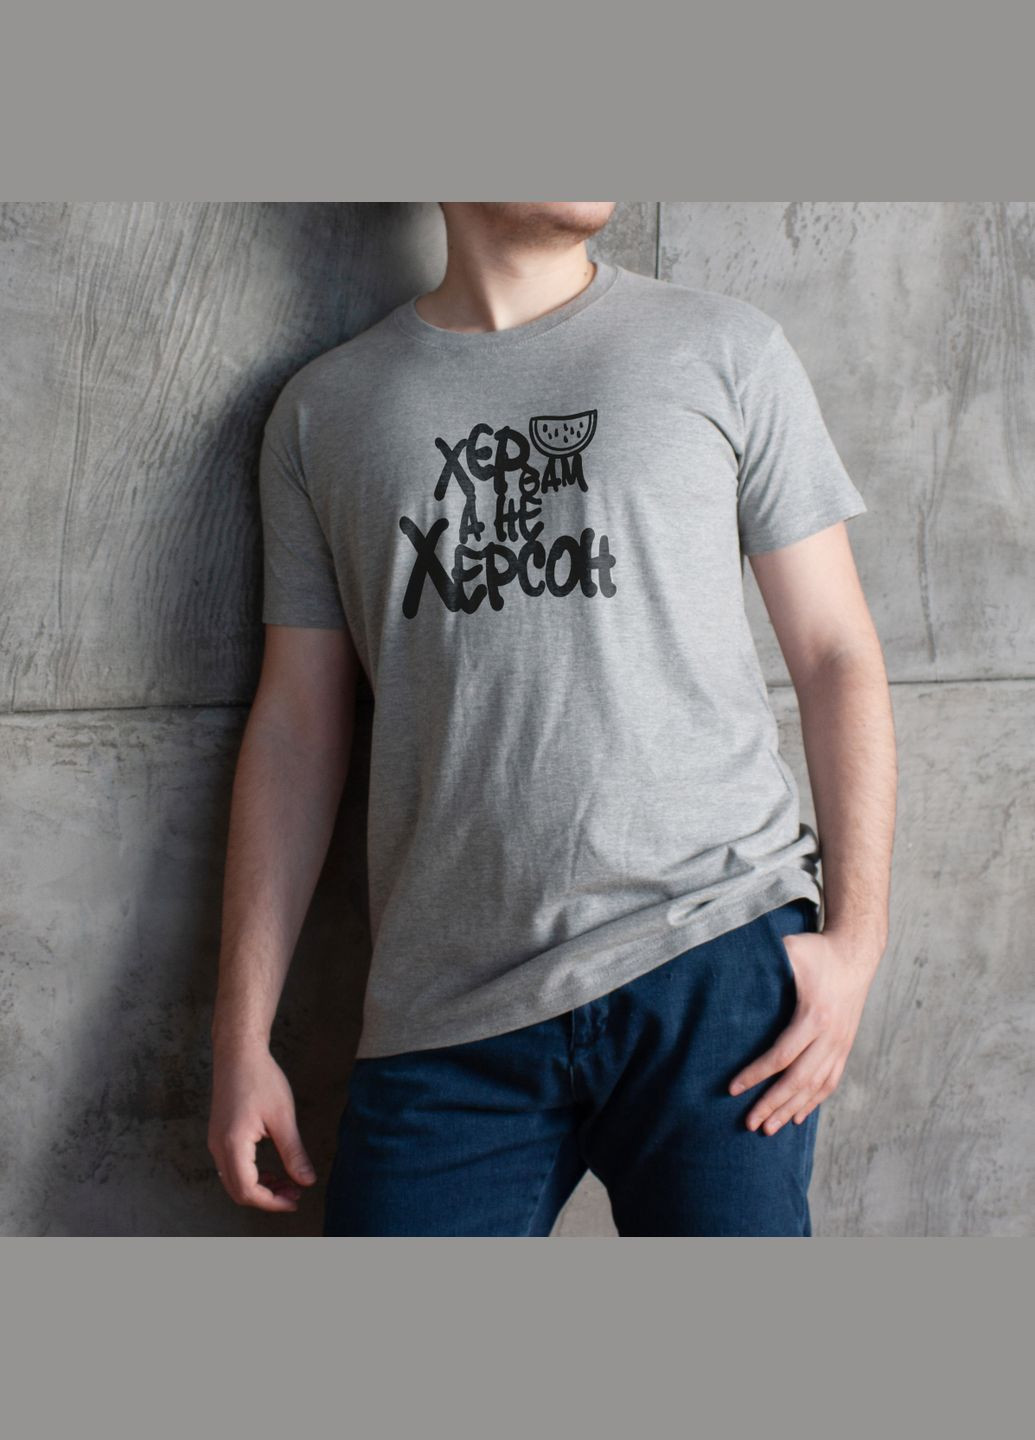 Сіра футболка чоловіча "хер вам, а не херсон" сіра (bd-f-236) BeriDari